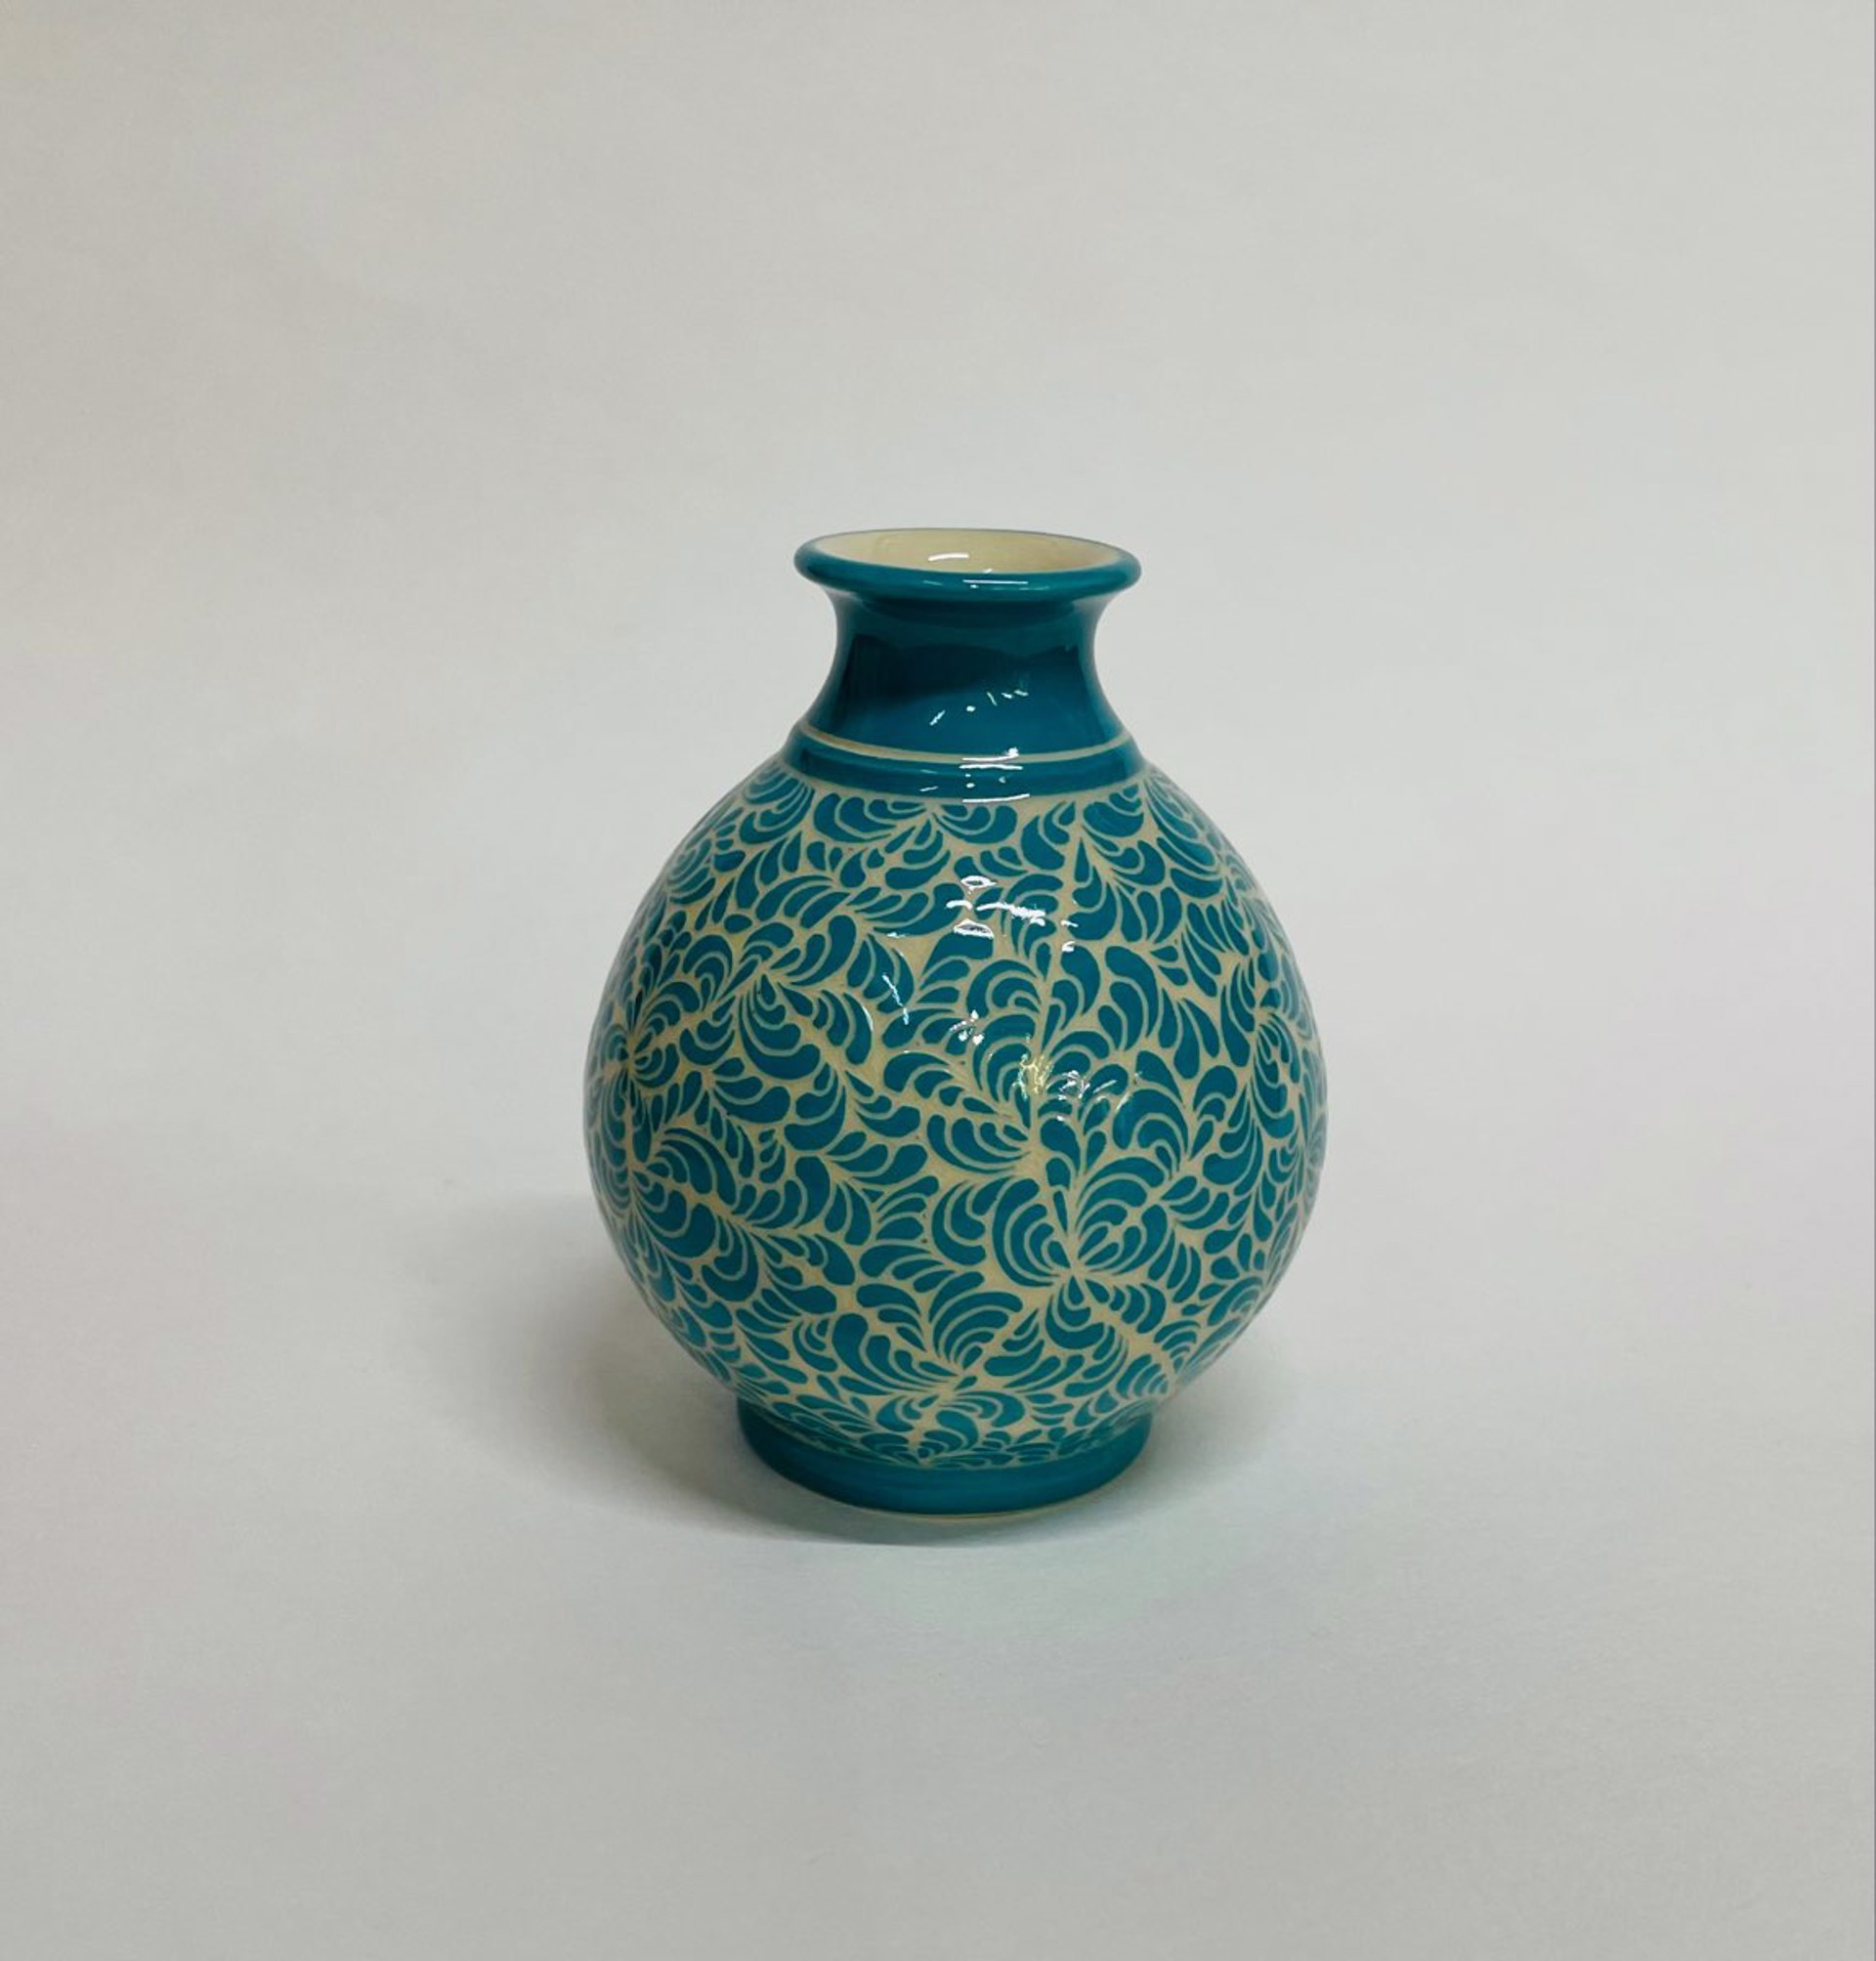 Vase by LeAnn Lewis